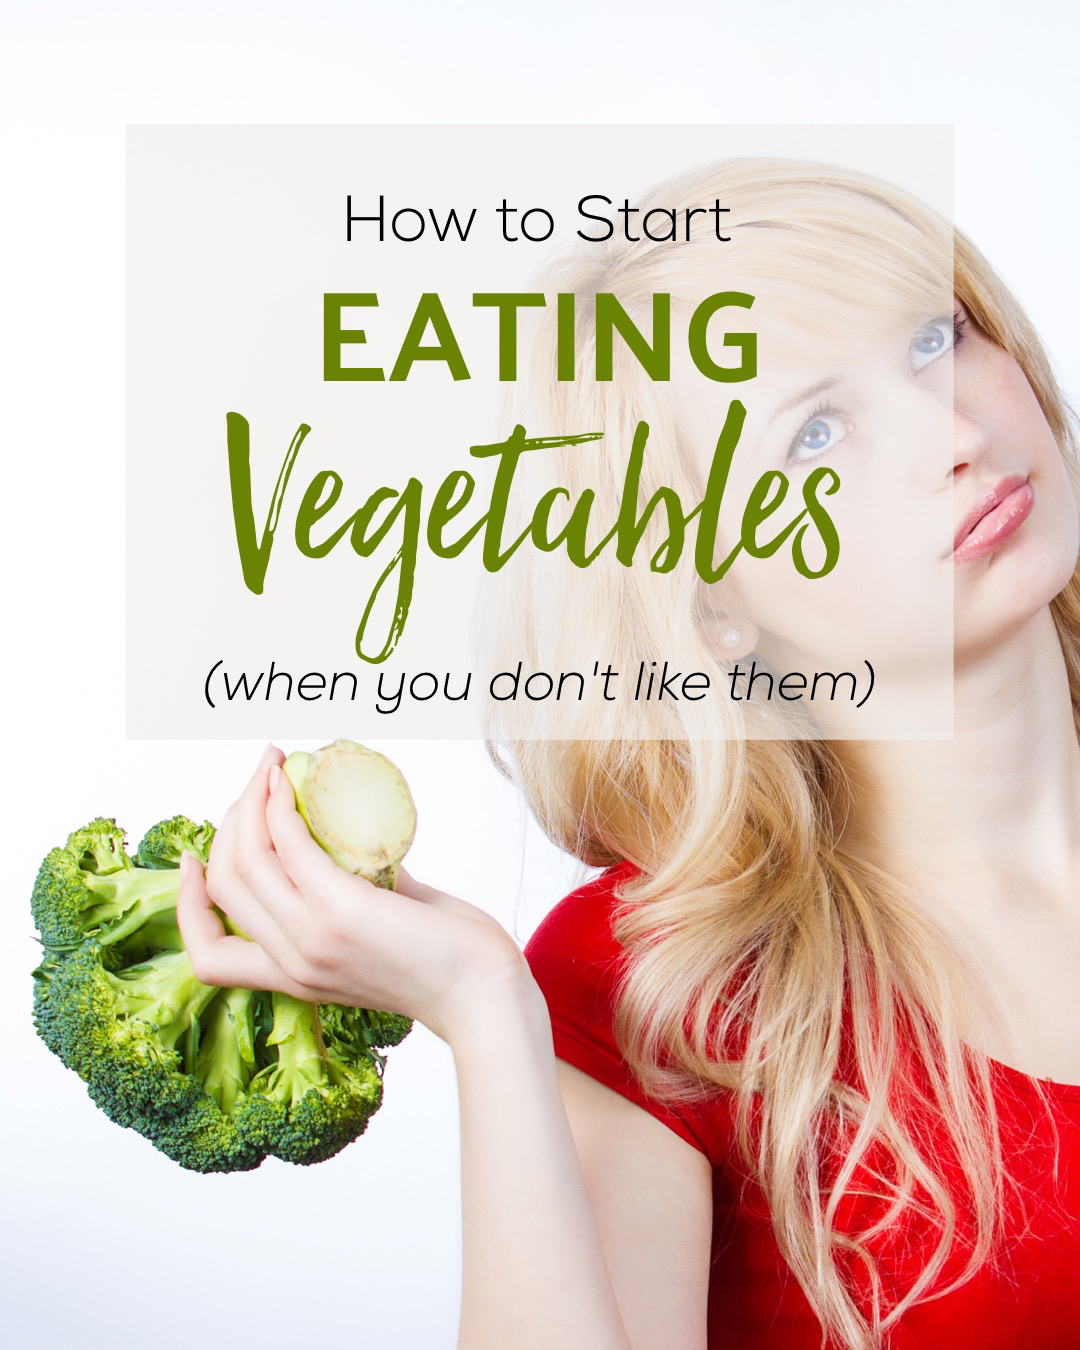 What Do I Do If I Don't Like Vegetables?